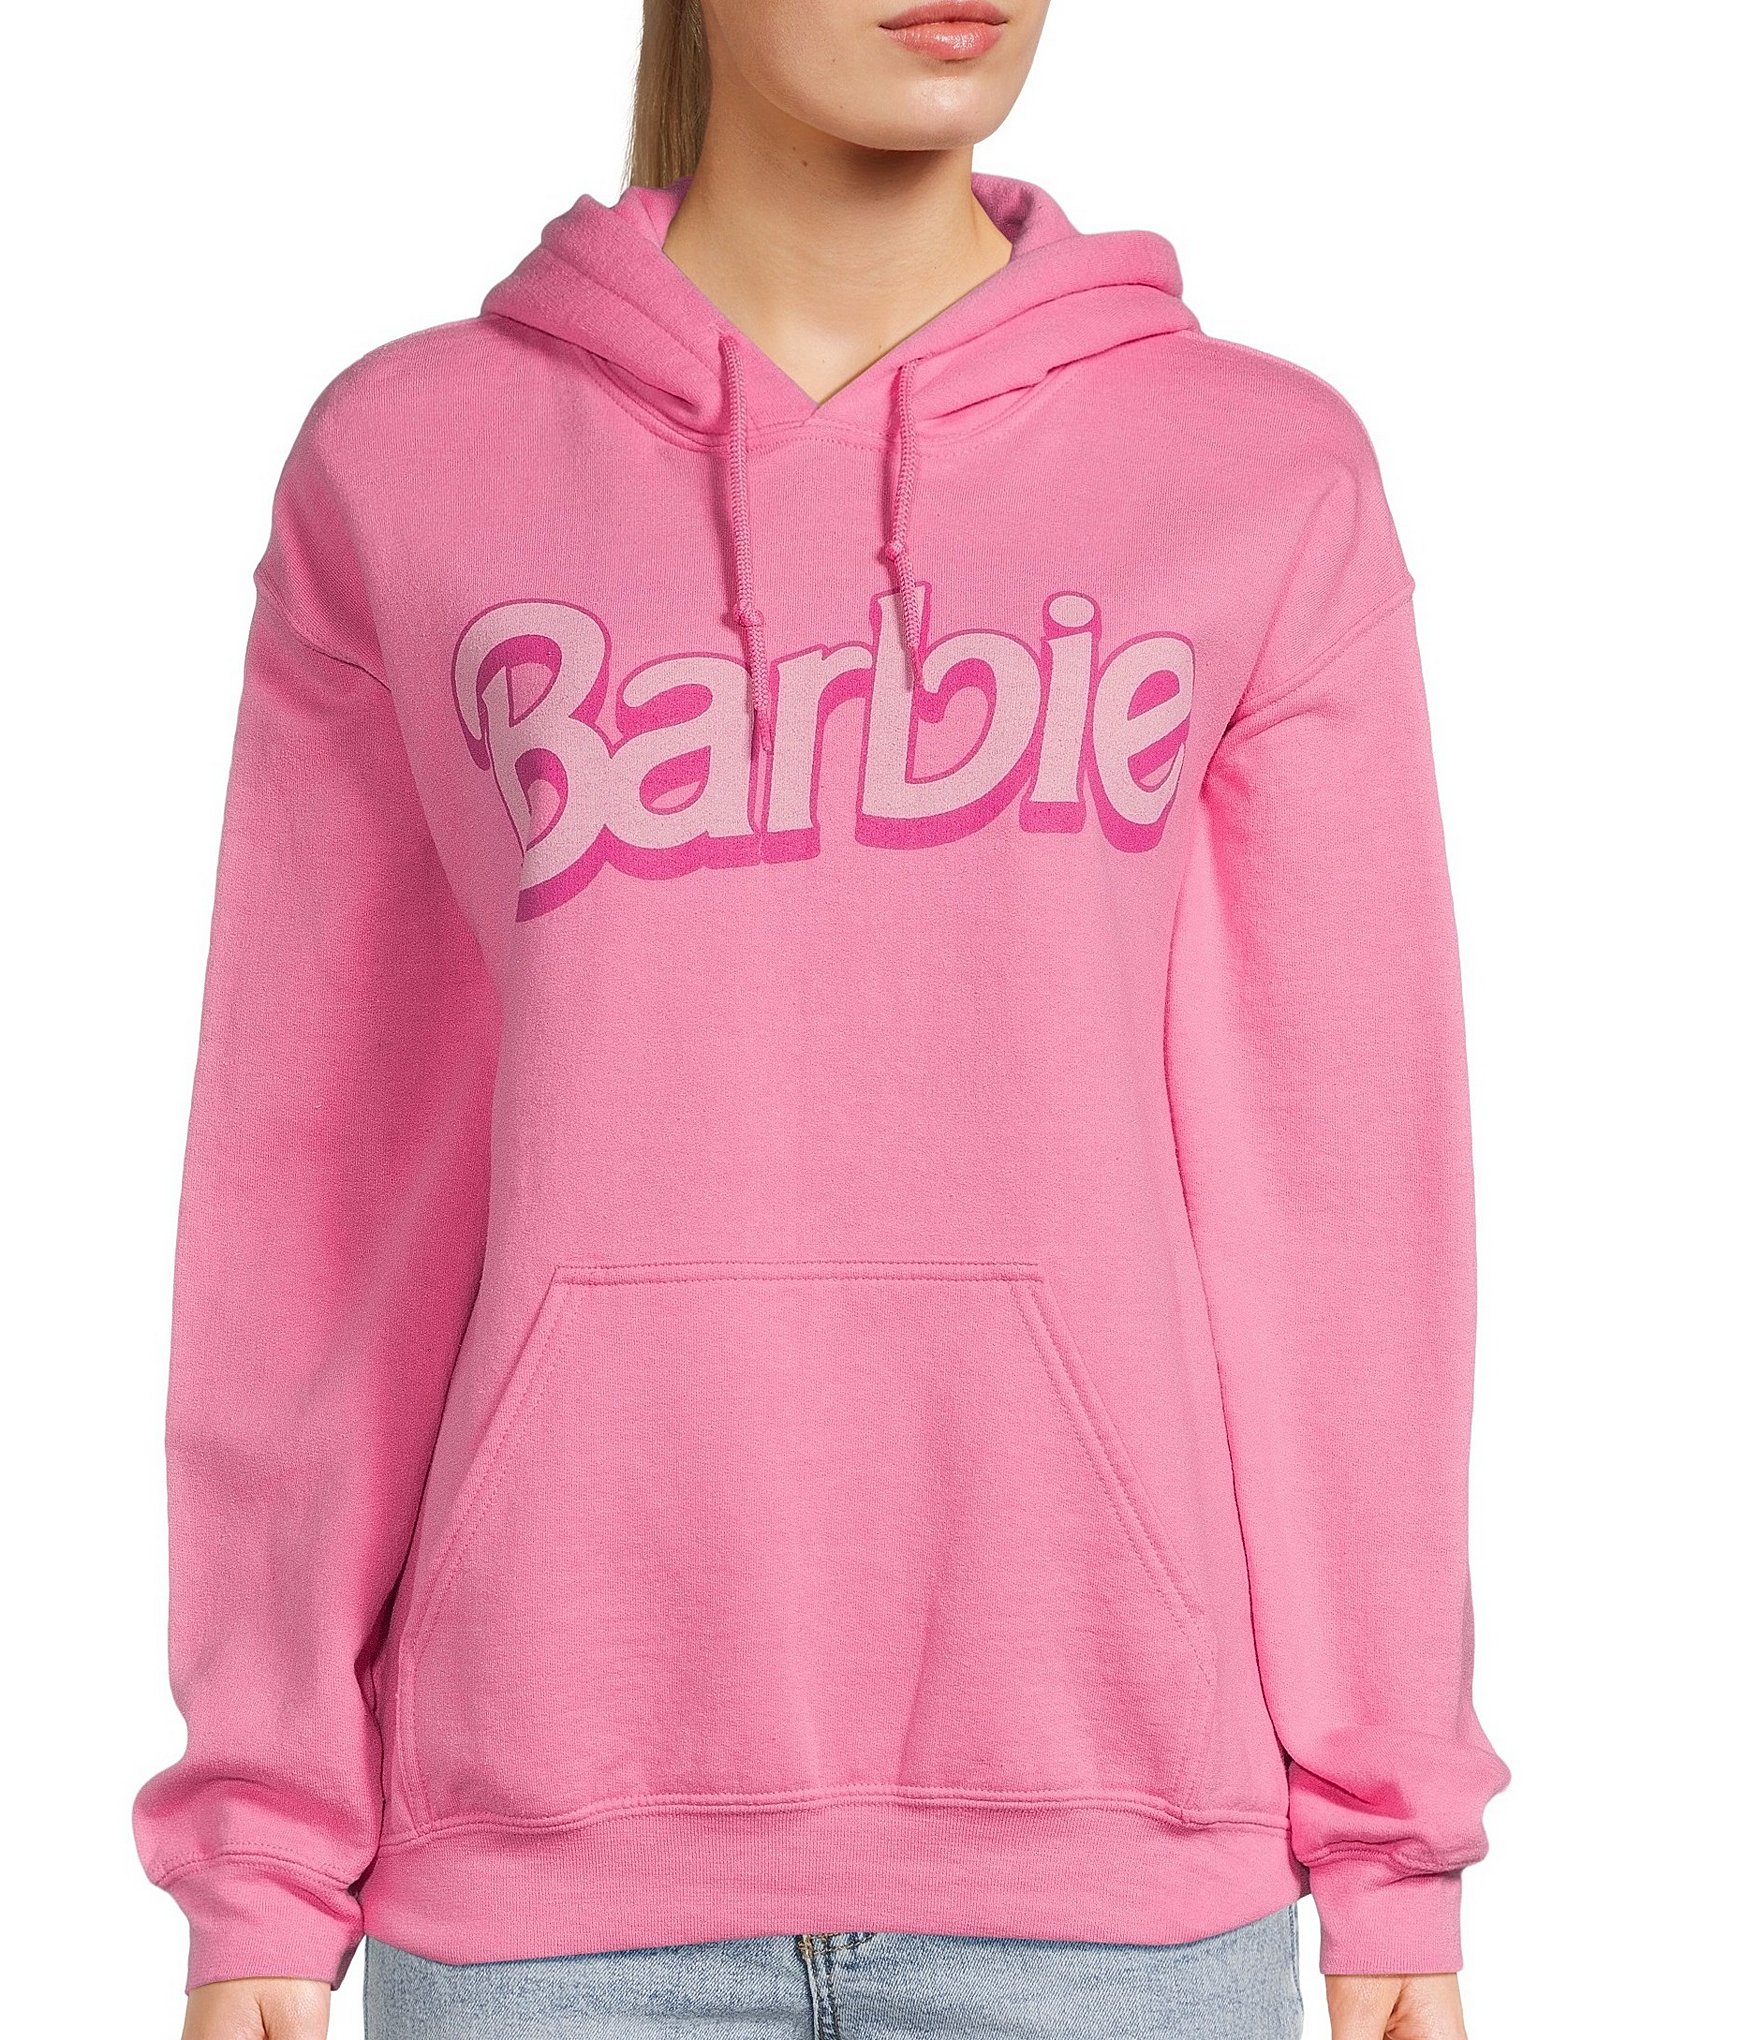 Barbie Hoodie, Barbie Outfit, Barbie Logo Hoodie, Barbie Women Sweater